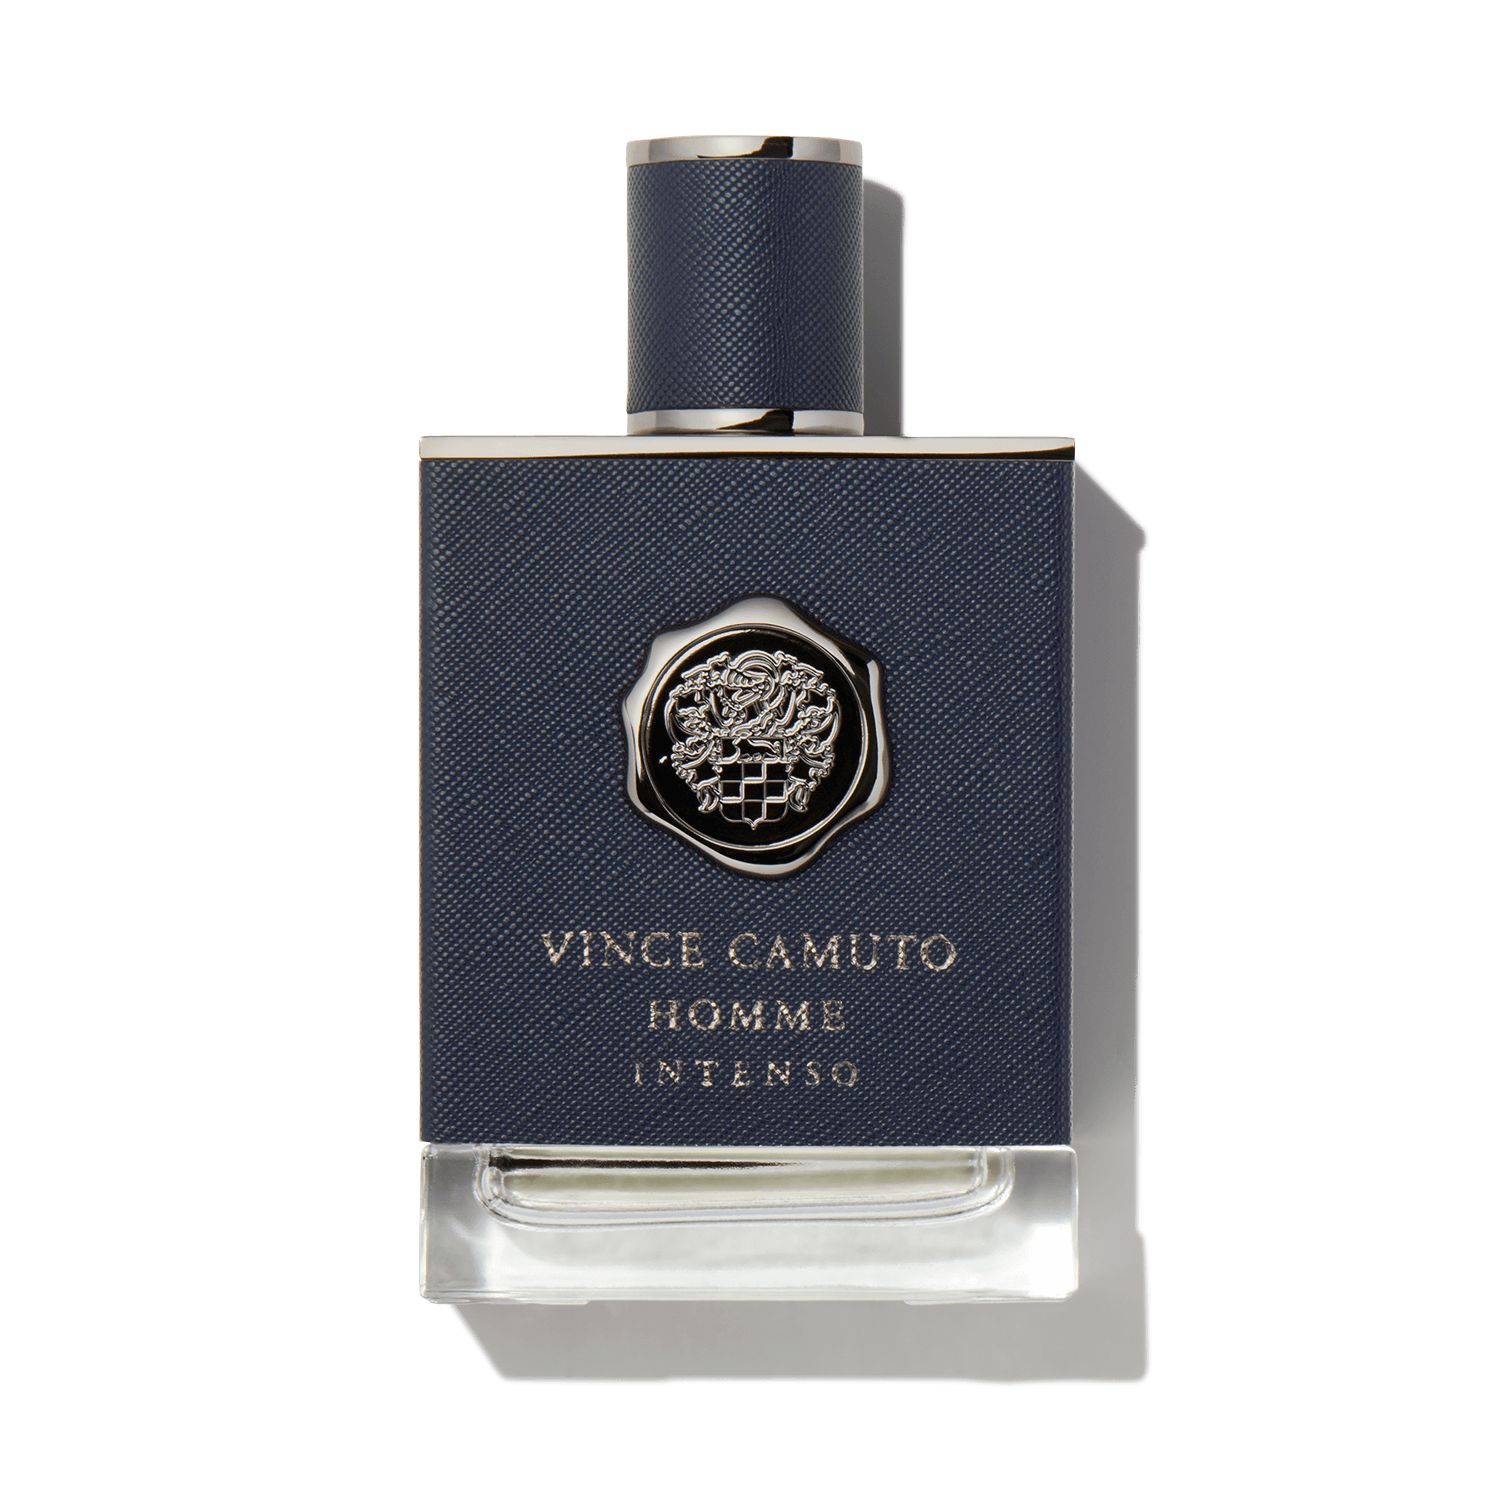 Vince Camuto Perfume Eau De Parfum by Vince Camuto